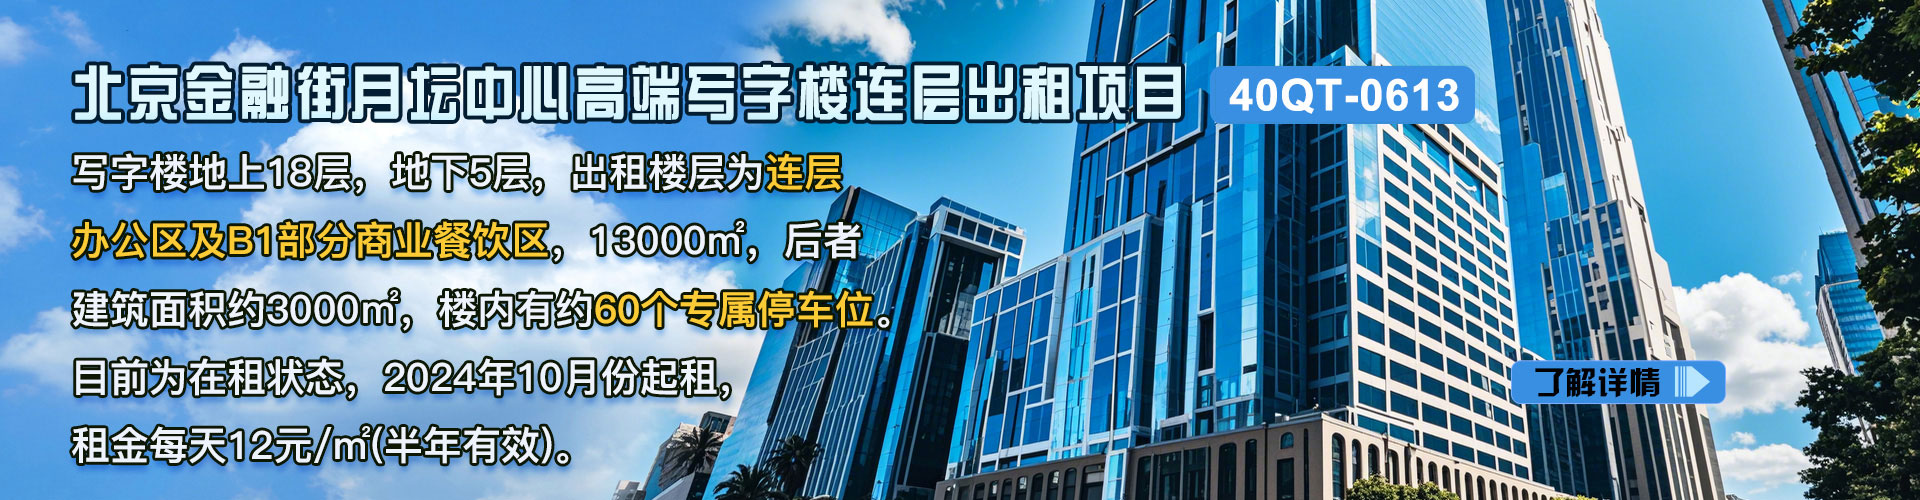 写字楼|北京金融街月坛中心高端写字楼连层出租项目40QT-0613